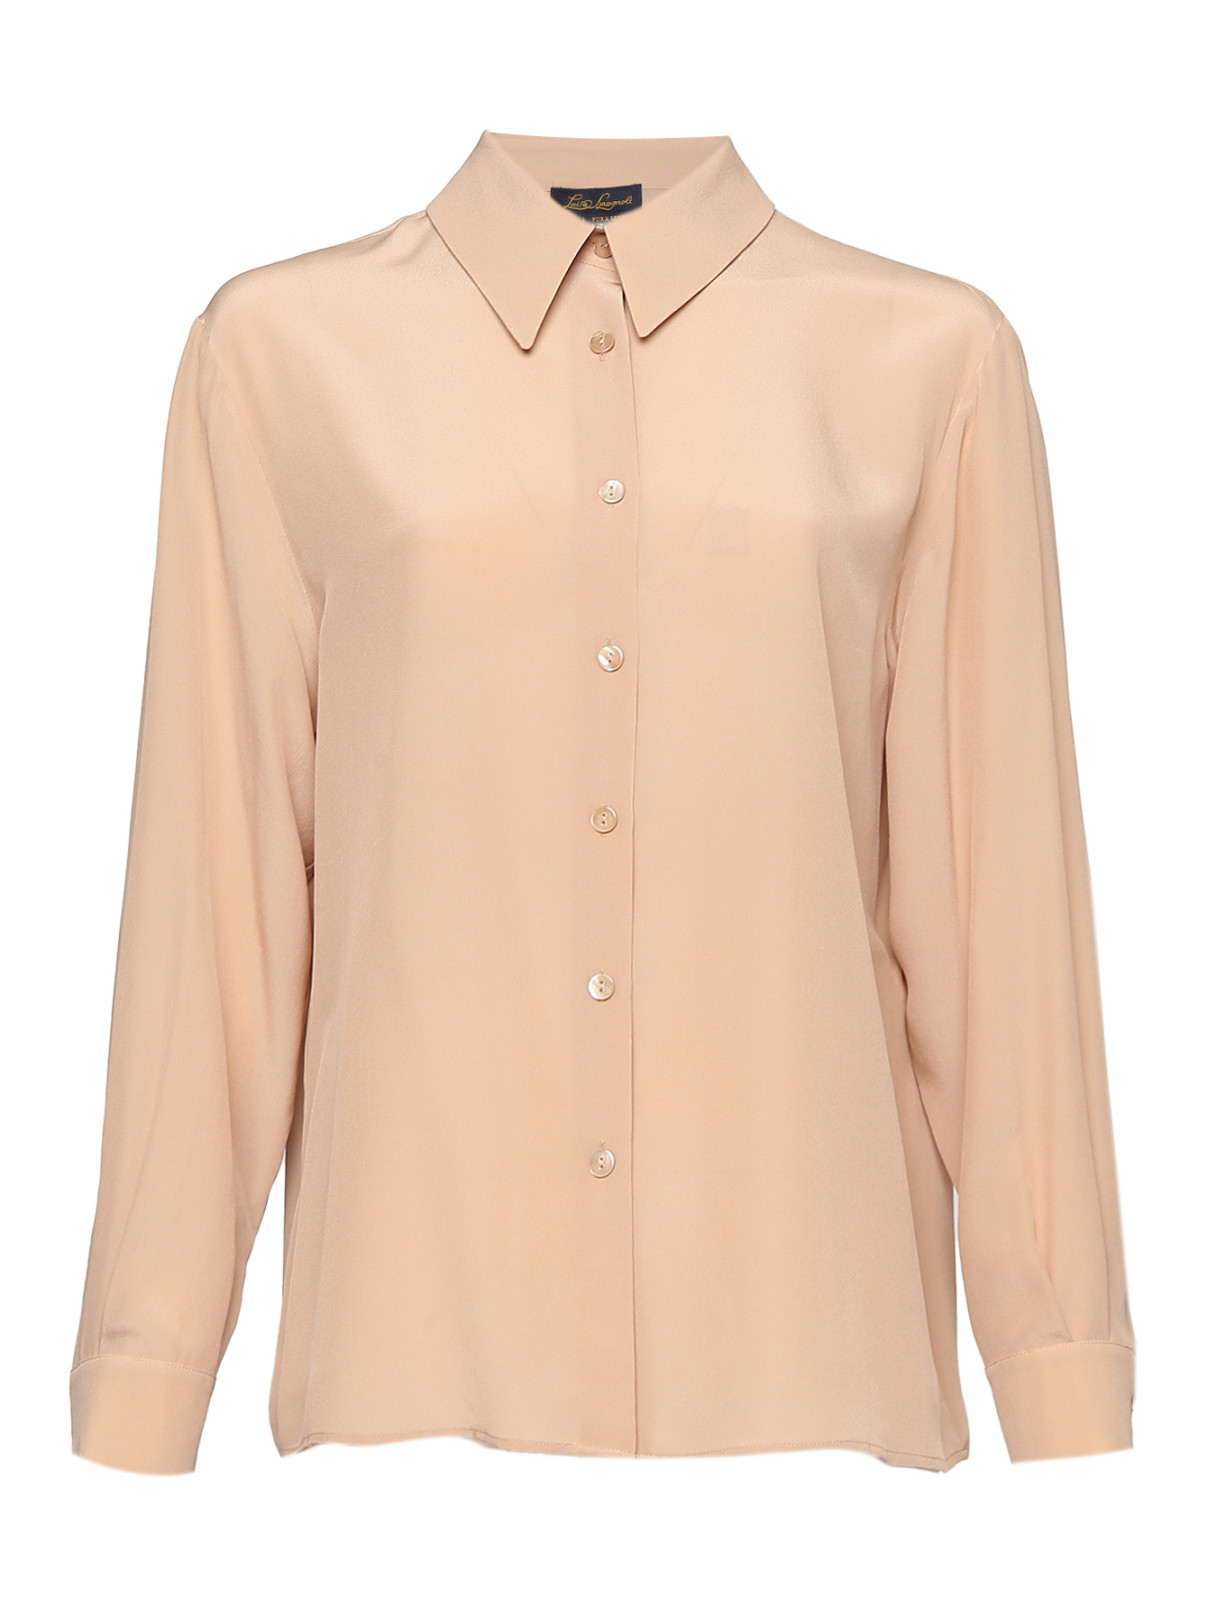 Блуза из шелка свободного кроя Luisa Spagnoli  –  Общий вид  – Цвет:  Бежевый